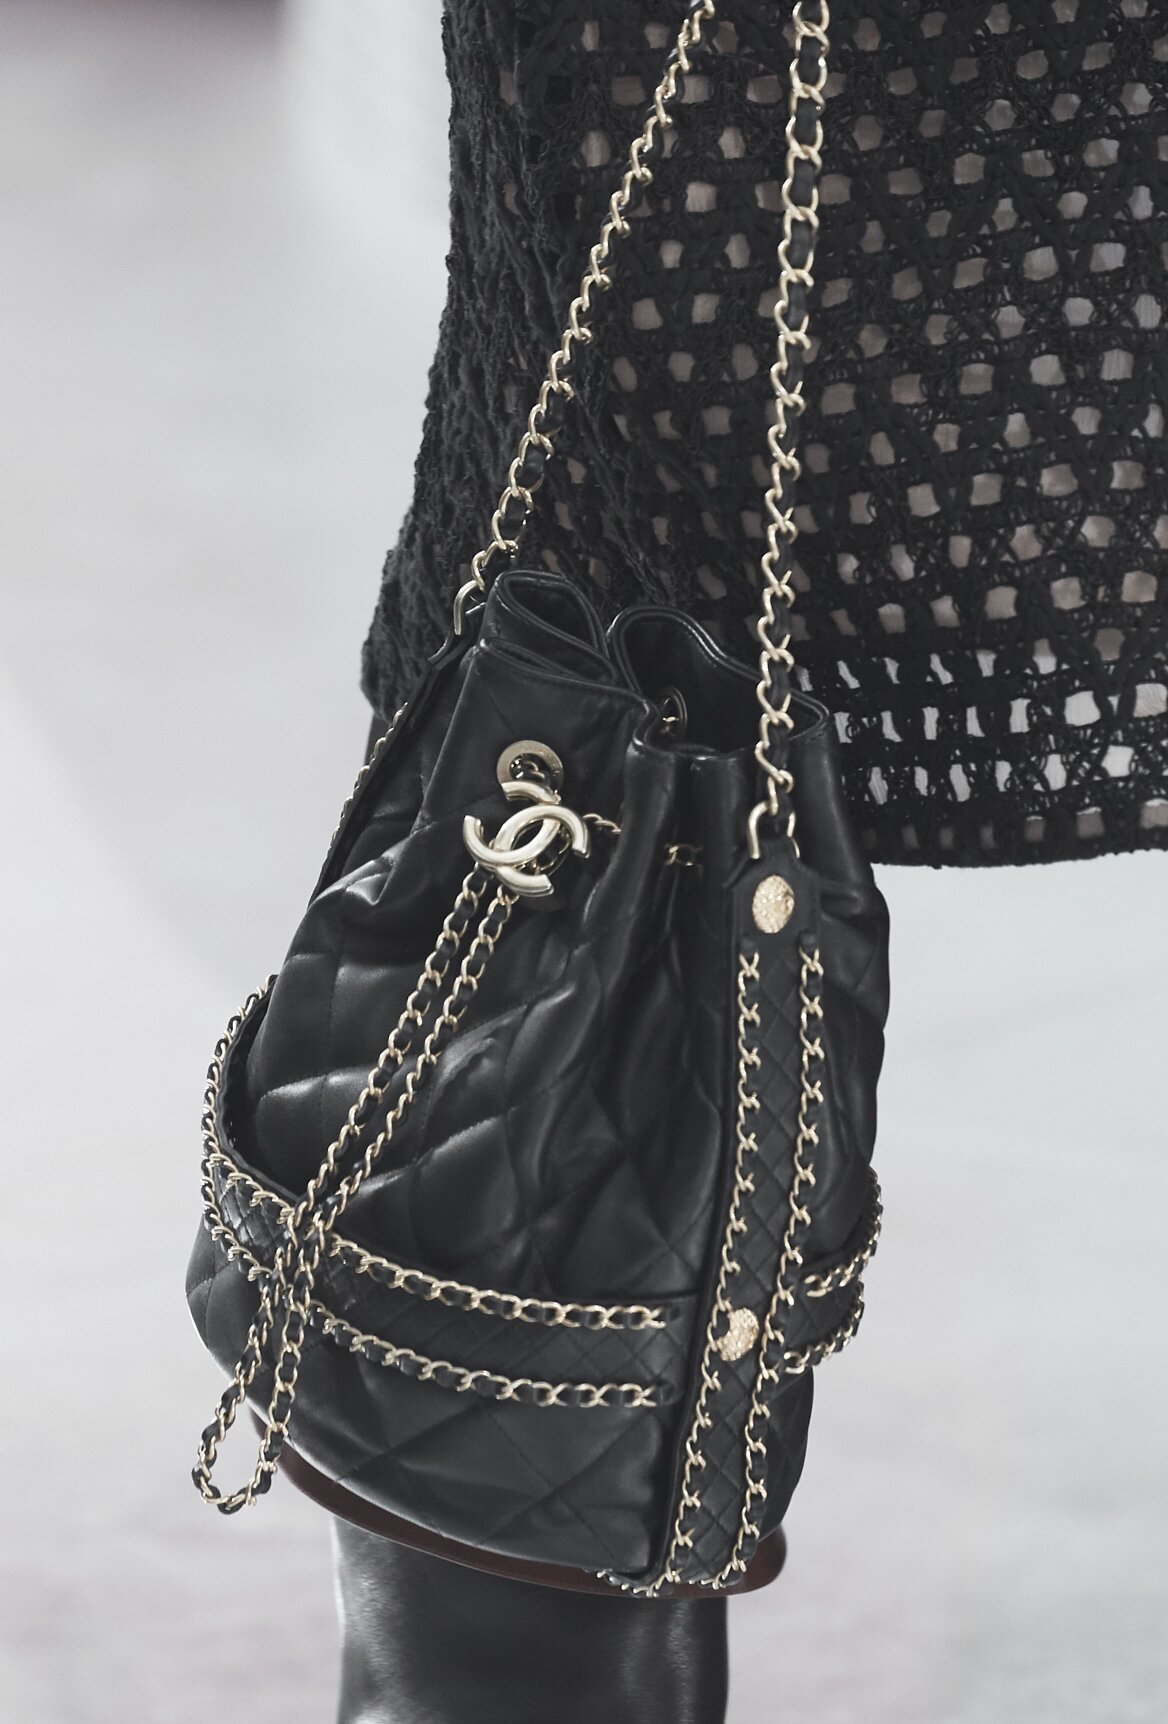 Handbags — Fashion | CHANEL